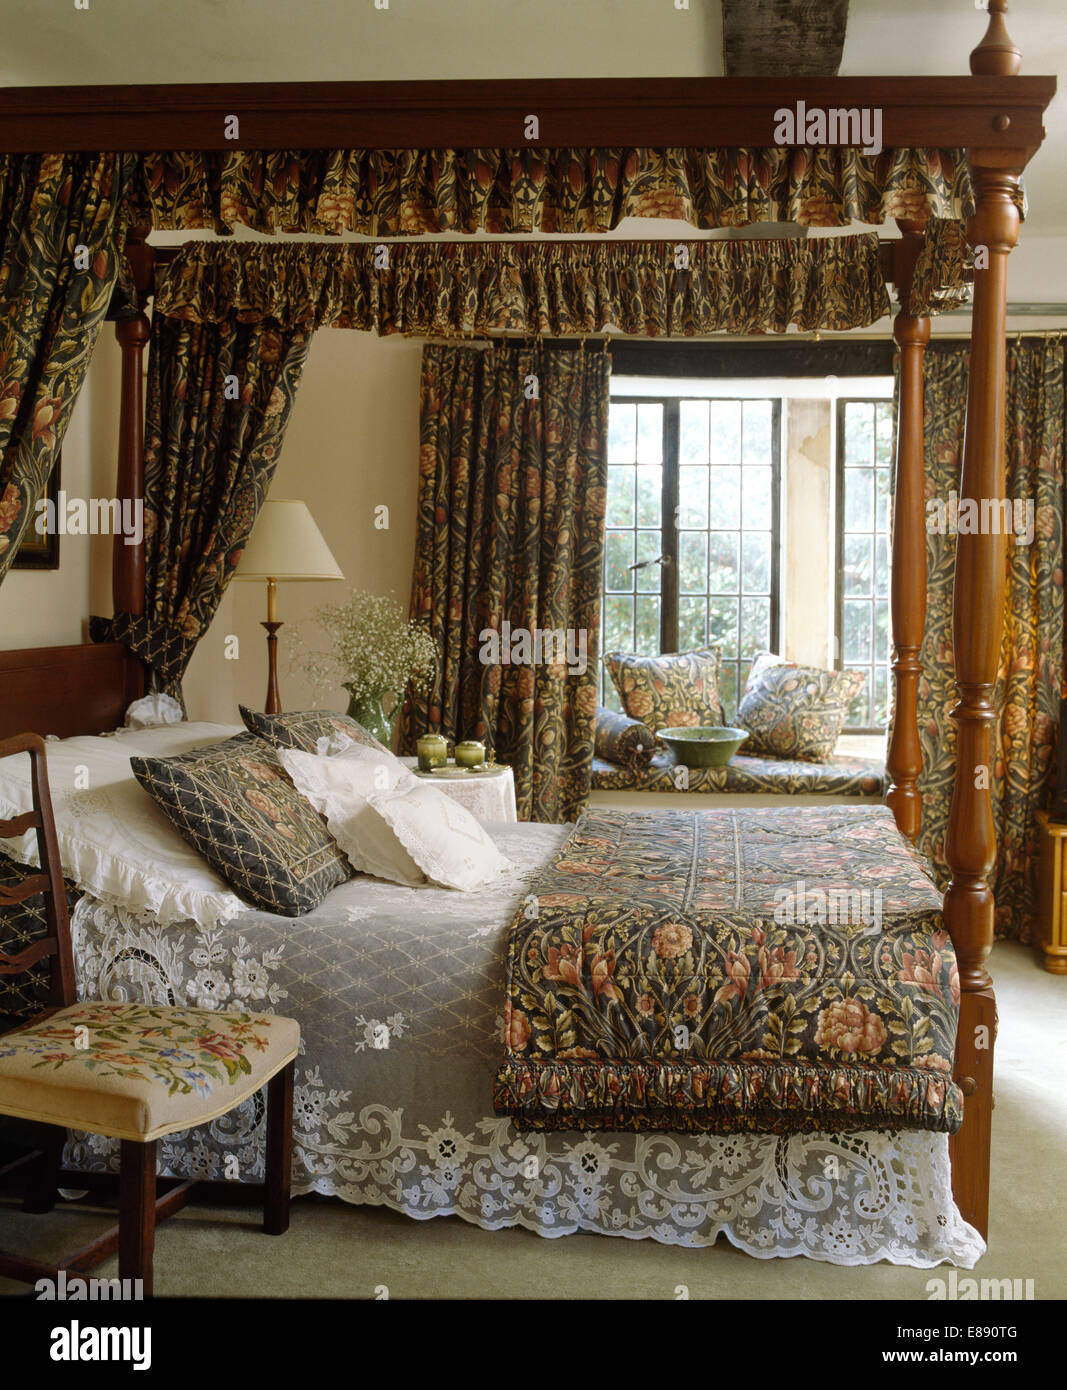 William Morris Vorhange Am Himmelbett Mit Spitze Bettdecke Und Gefalteten Quilt Im Land Schlafzimmer Stockfotografie Alamy